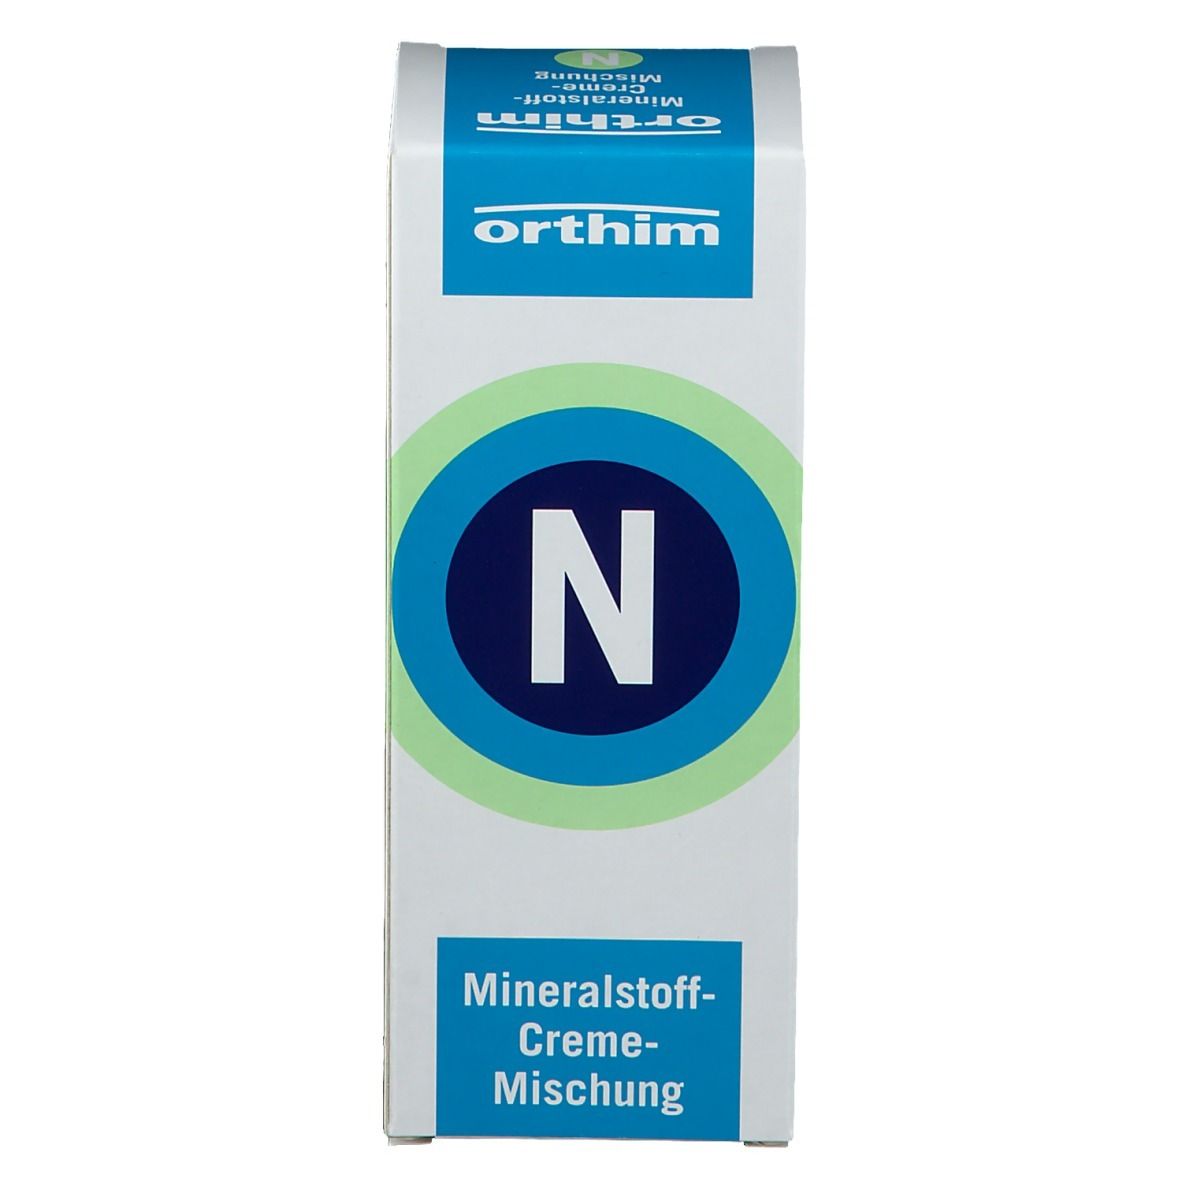 Mineralstoff-Creme-Mischung N